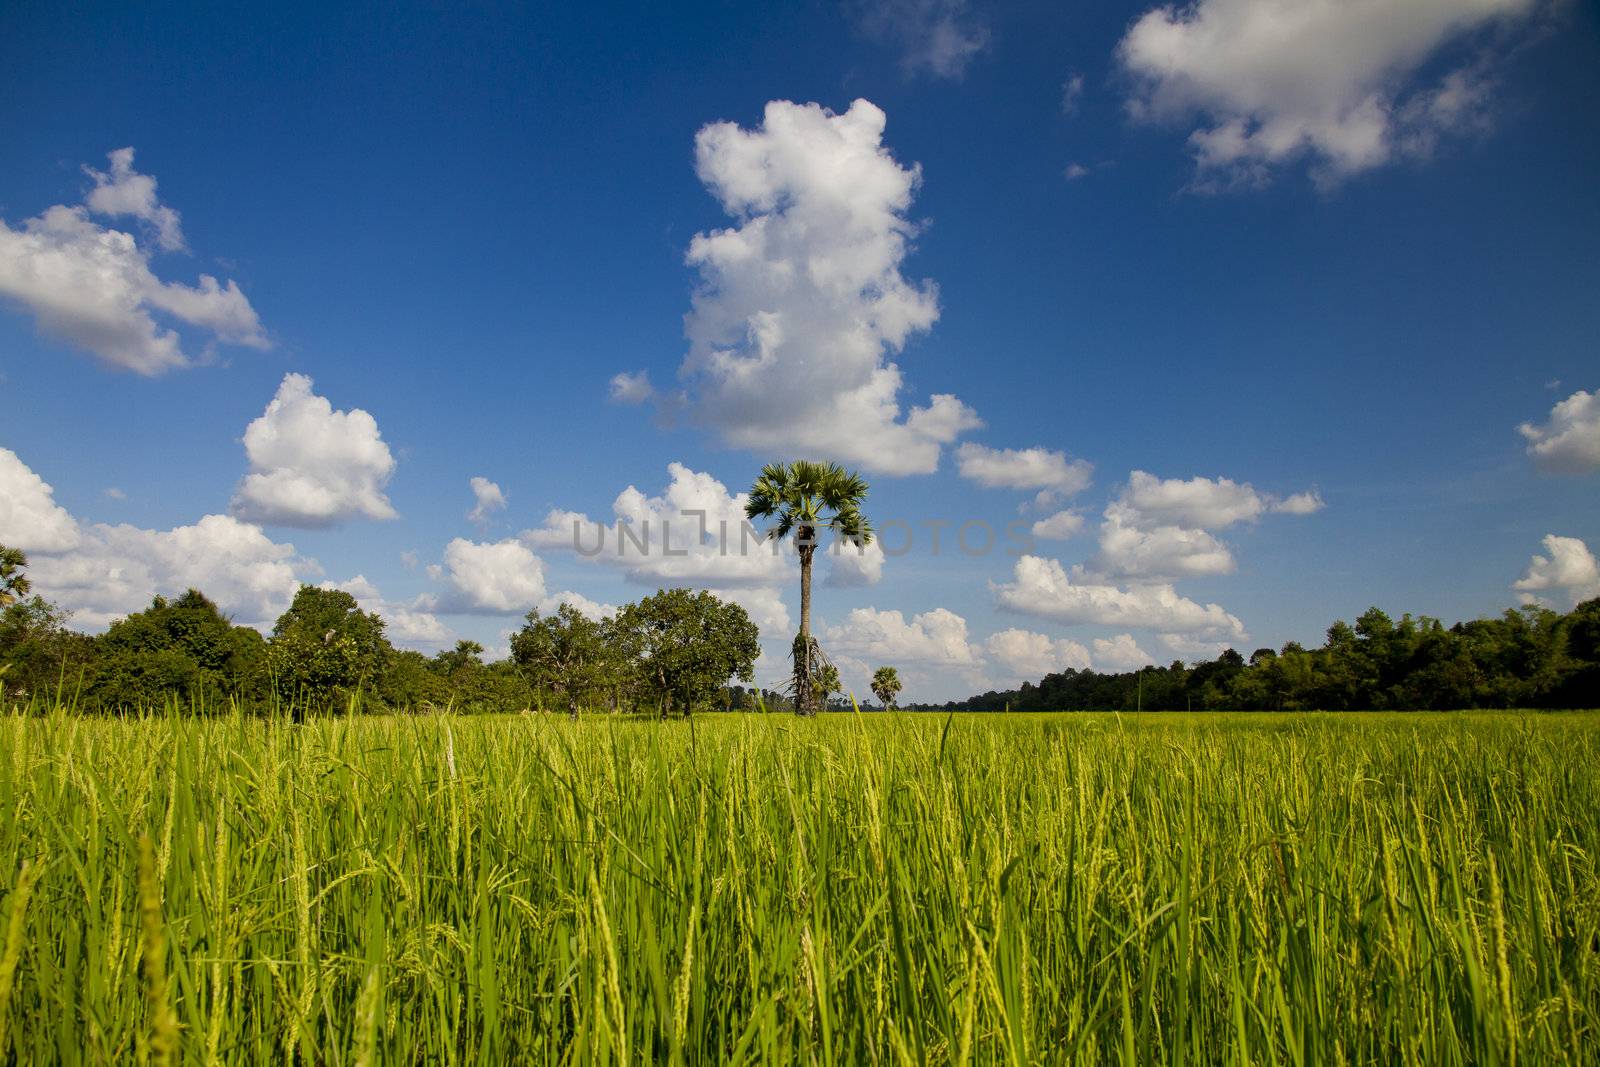 Palm tree in rice field by tpfeller